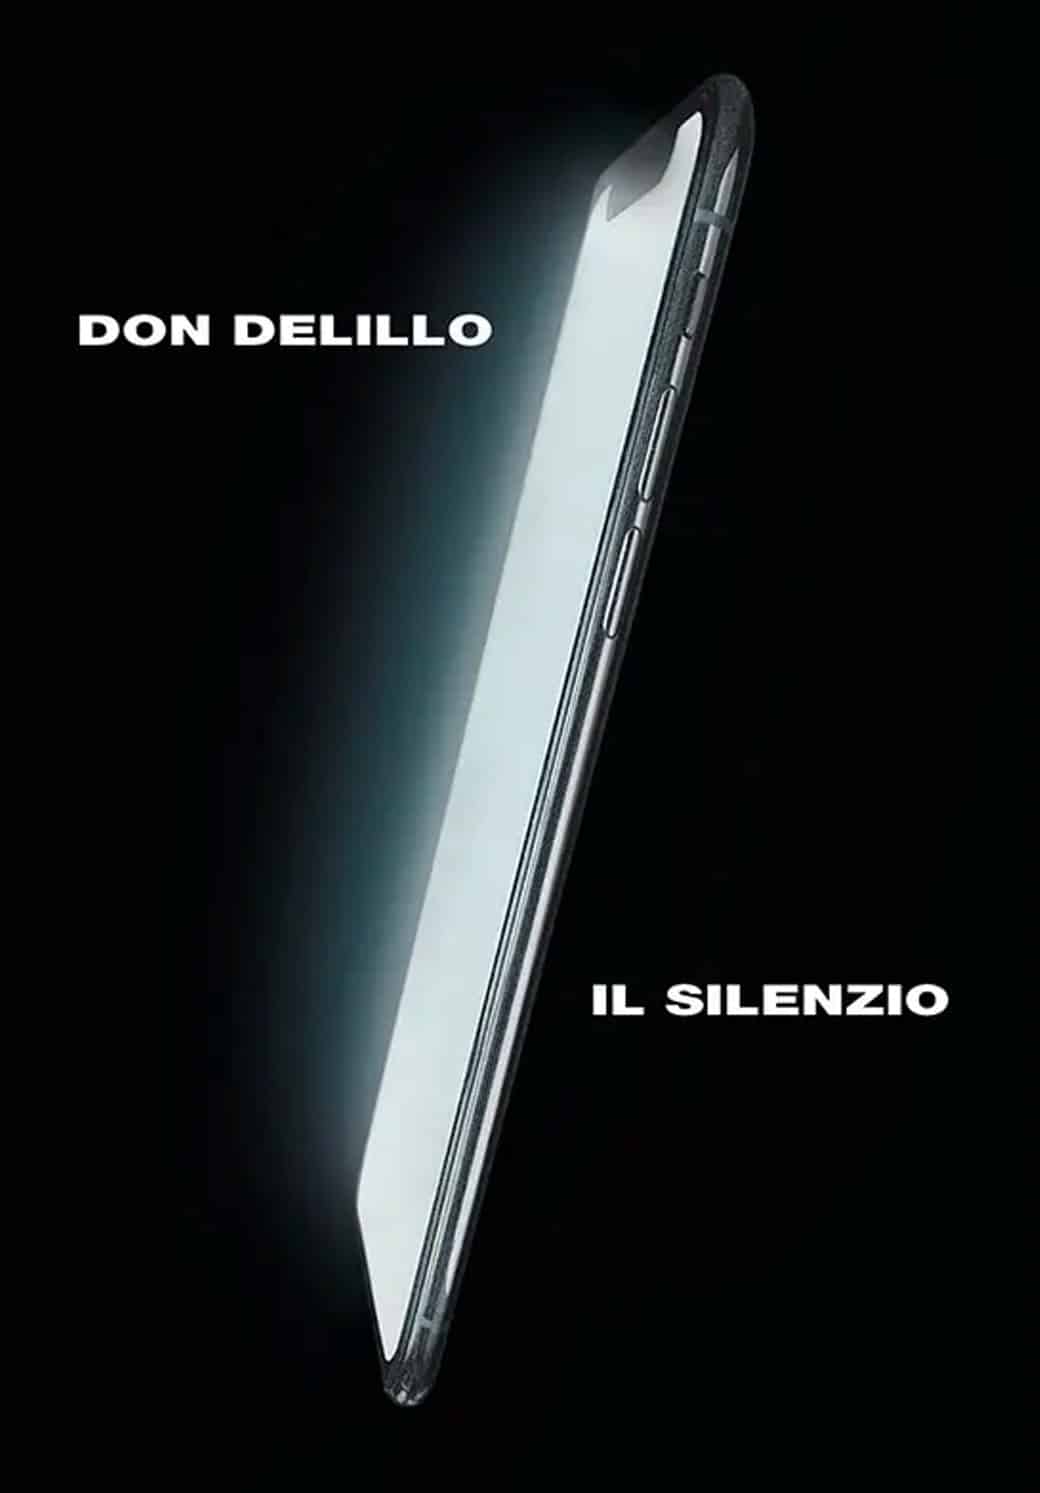 Cover del libro "Il Silenzio" di Don Delillo. Un cellulare con uno schermo bianco illuminato su uno sfondo nero